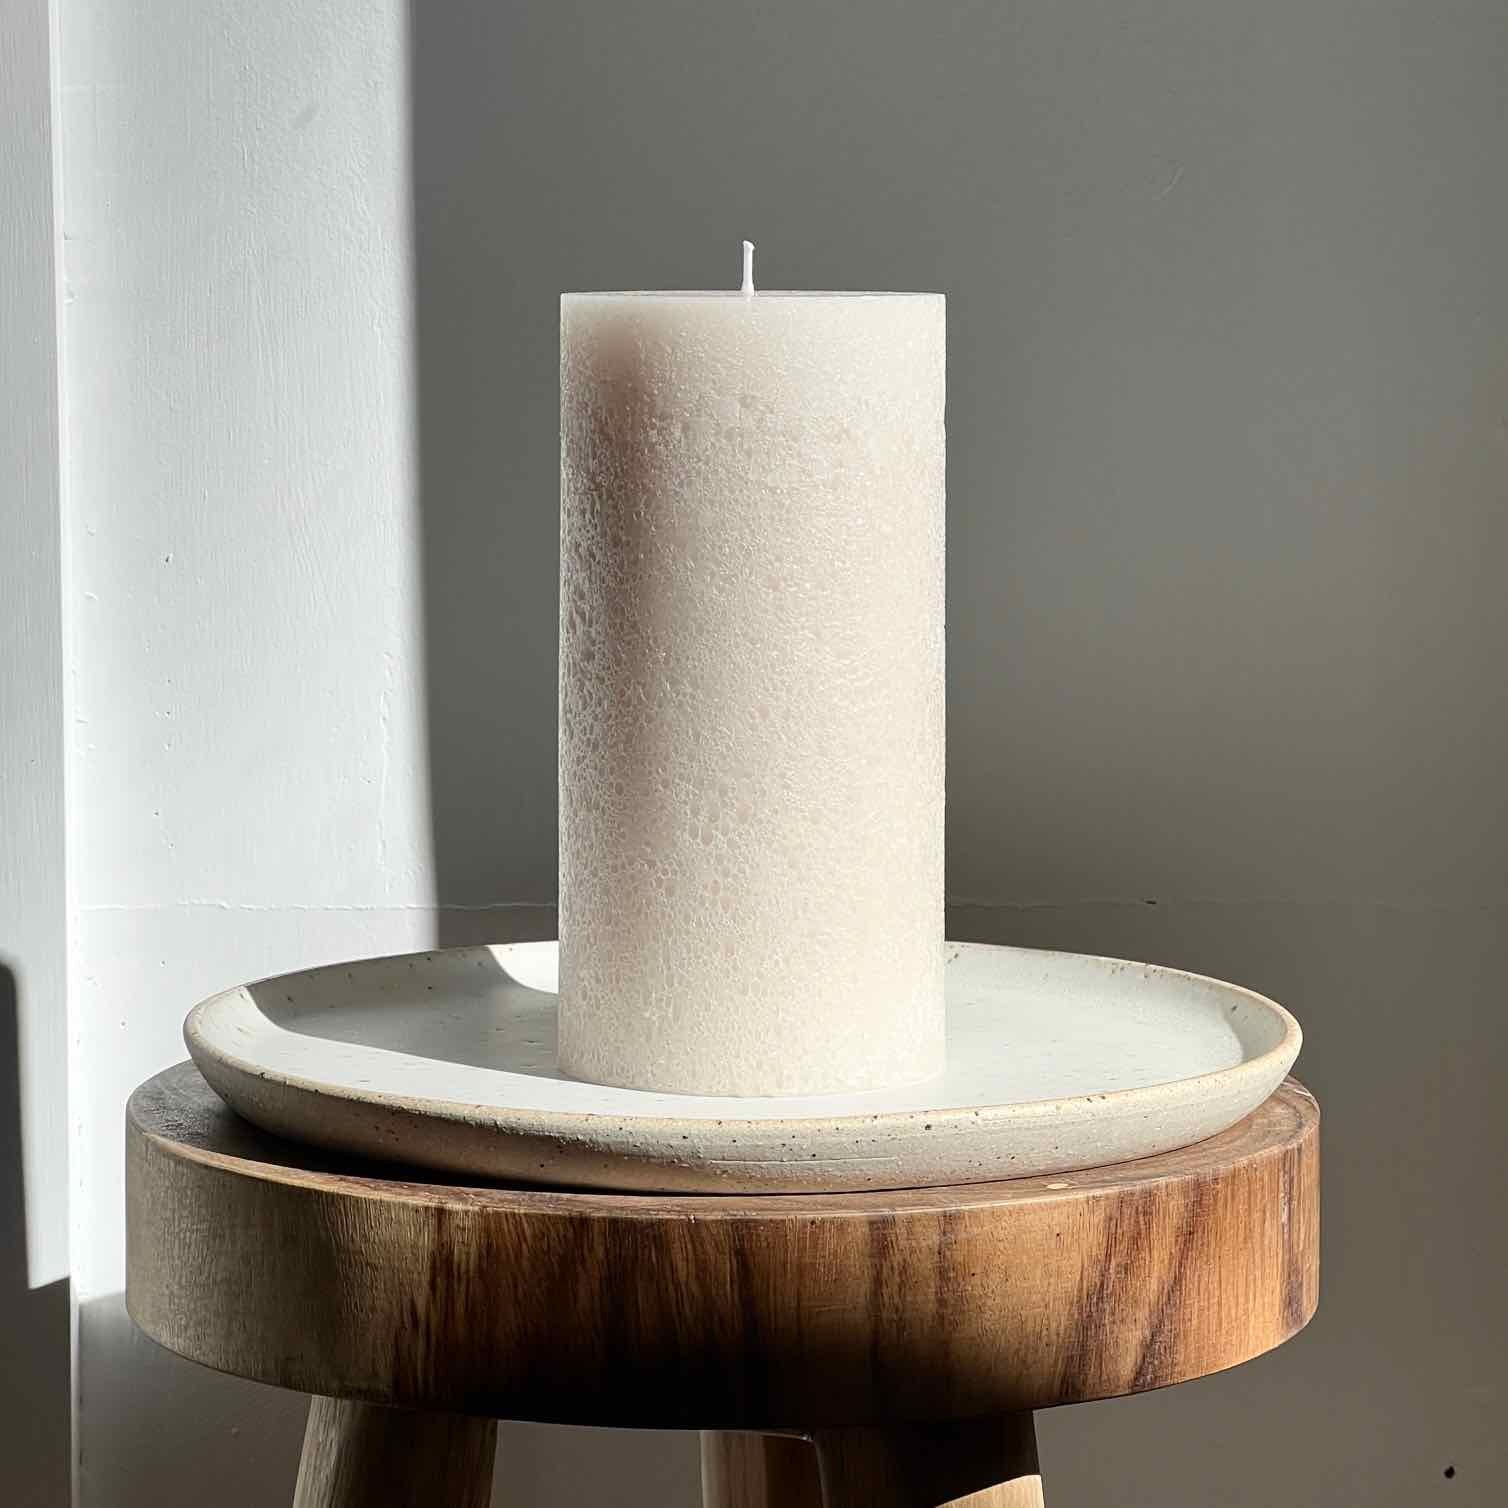 Neutral textured pillar candle